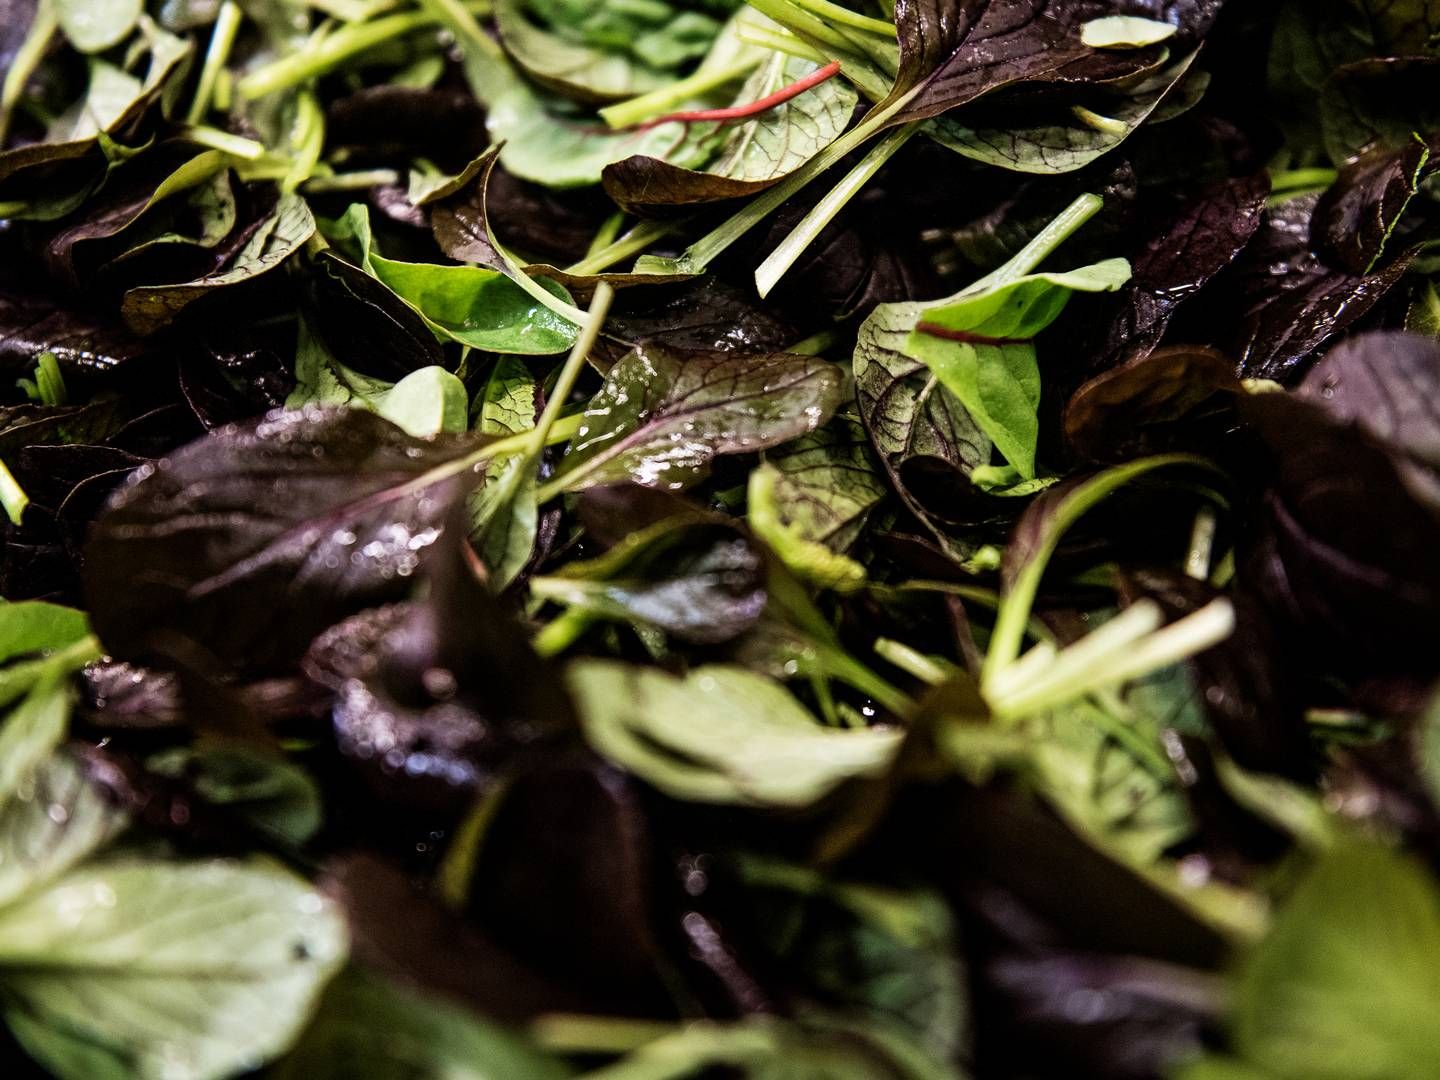 Markedet for salater og snitgrønt har været præget af hård konkurrence de senere år, hvilket har ramt det nu tidligere Yding Grønt hårdt. | Foto: Dalhoff Casper/Jyllands-Posten/Ritzau Scanpix